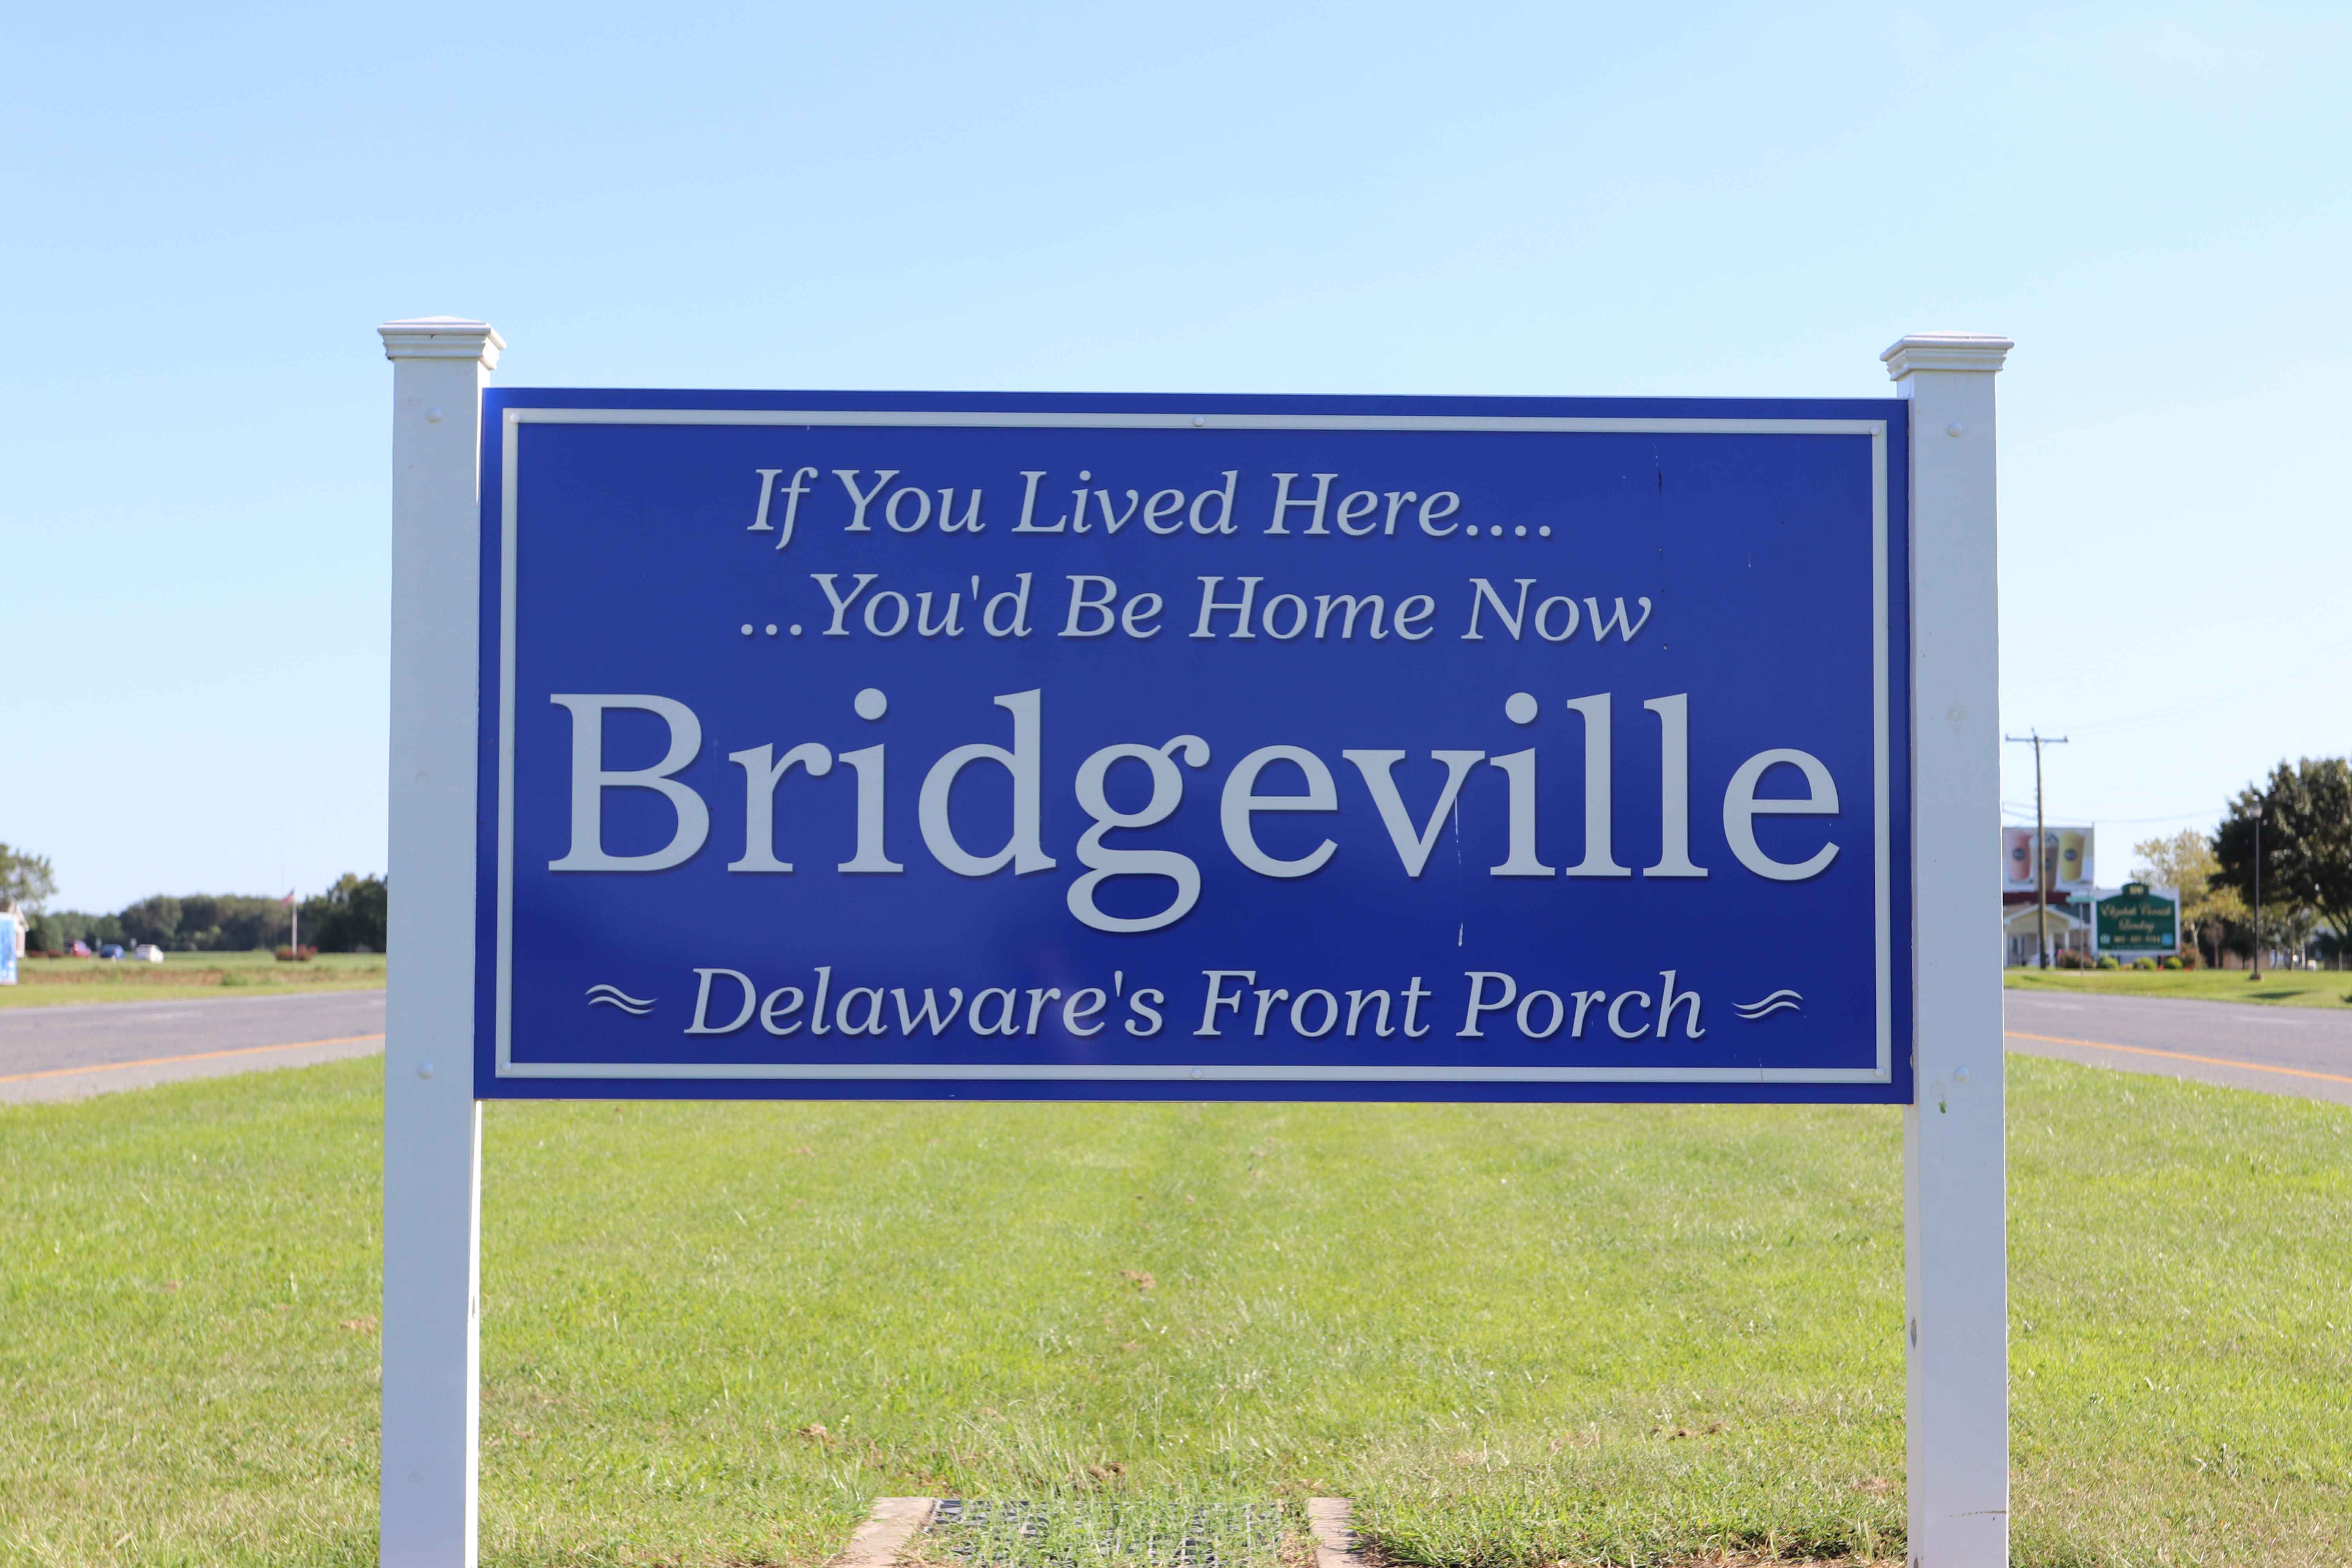 Welcome to Bridgeville Delaware